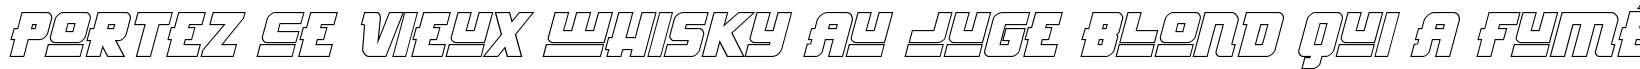 Пример написания шрифтом Hong Kong Hustle Outline Italic текста на французском